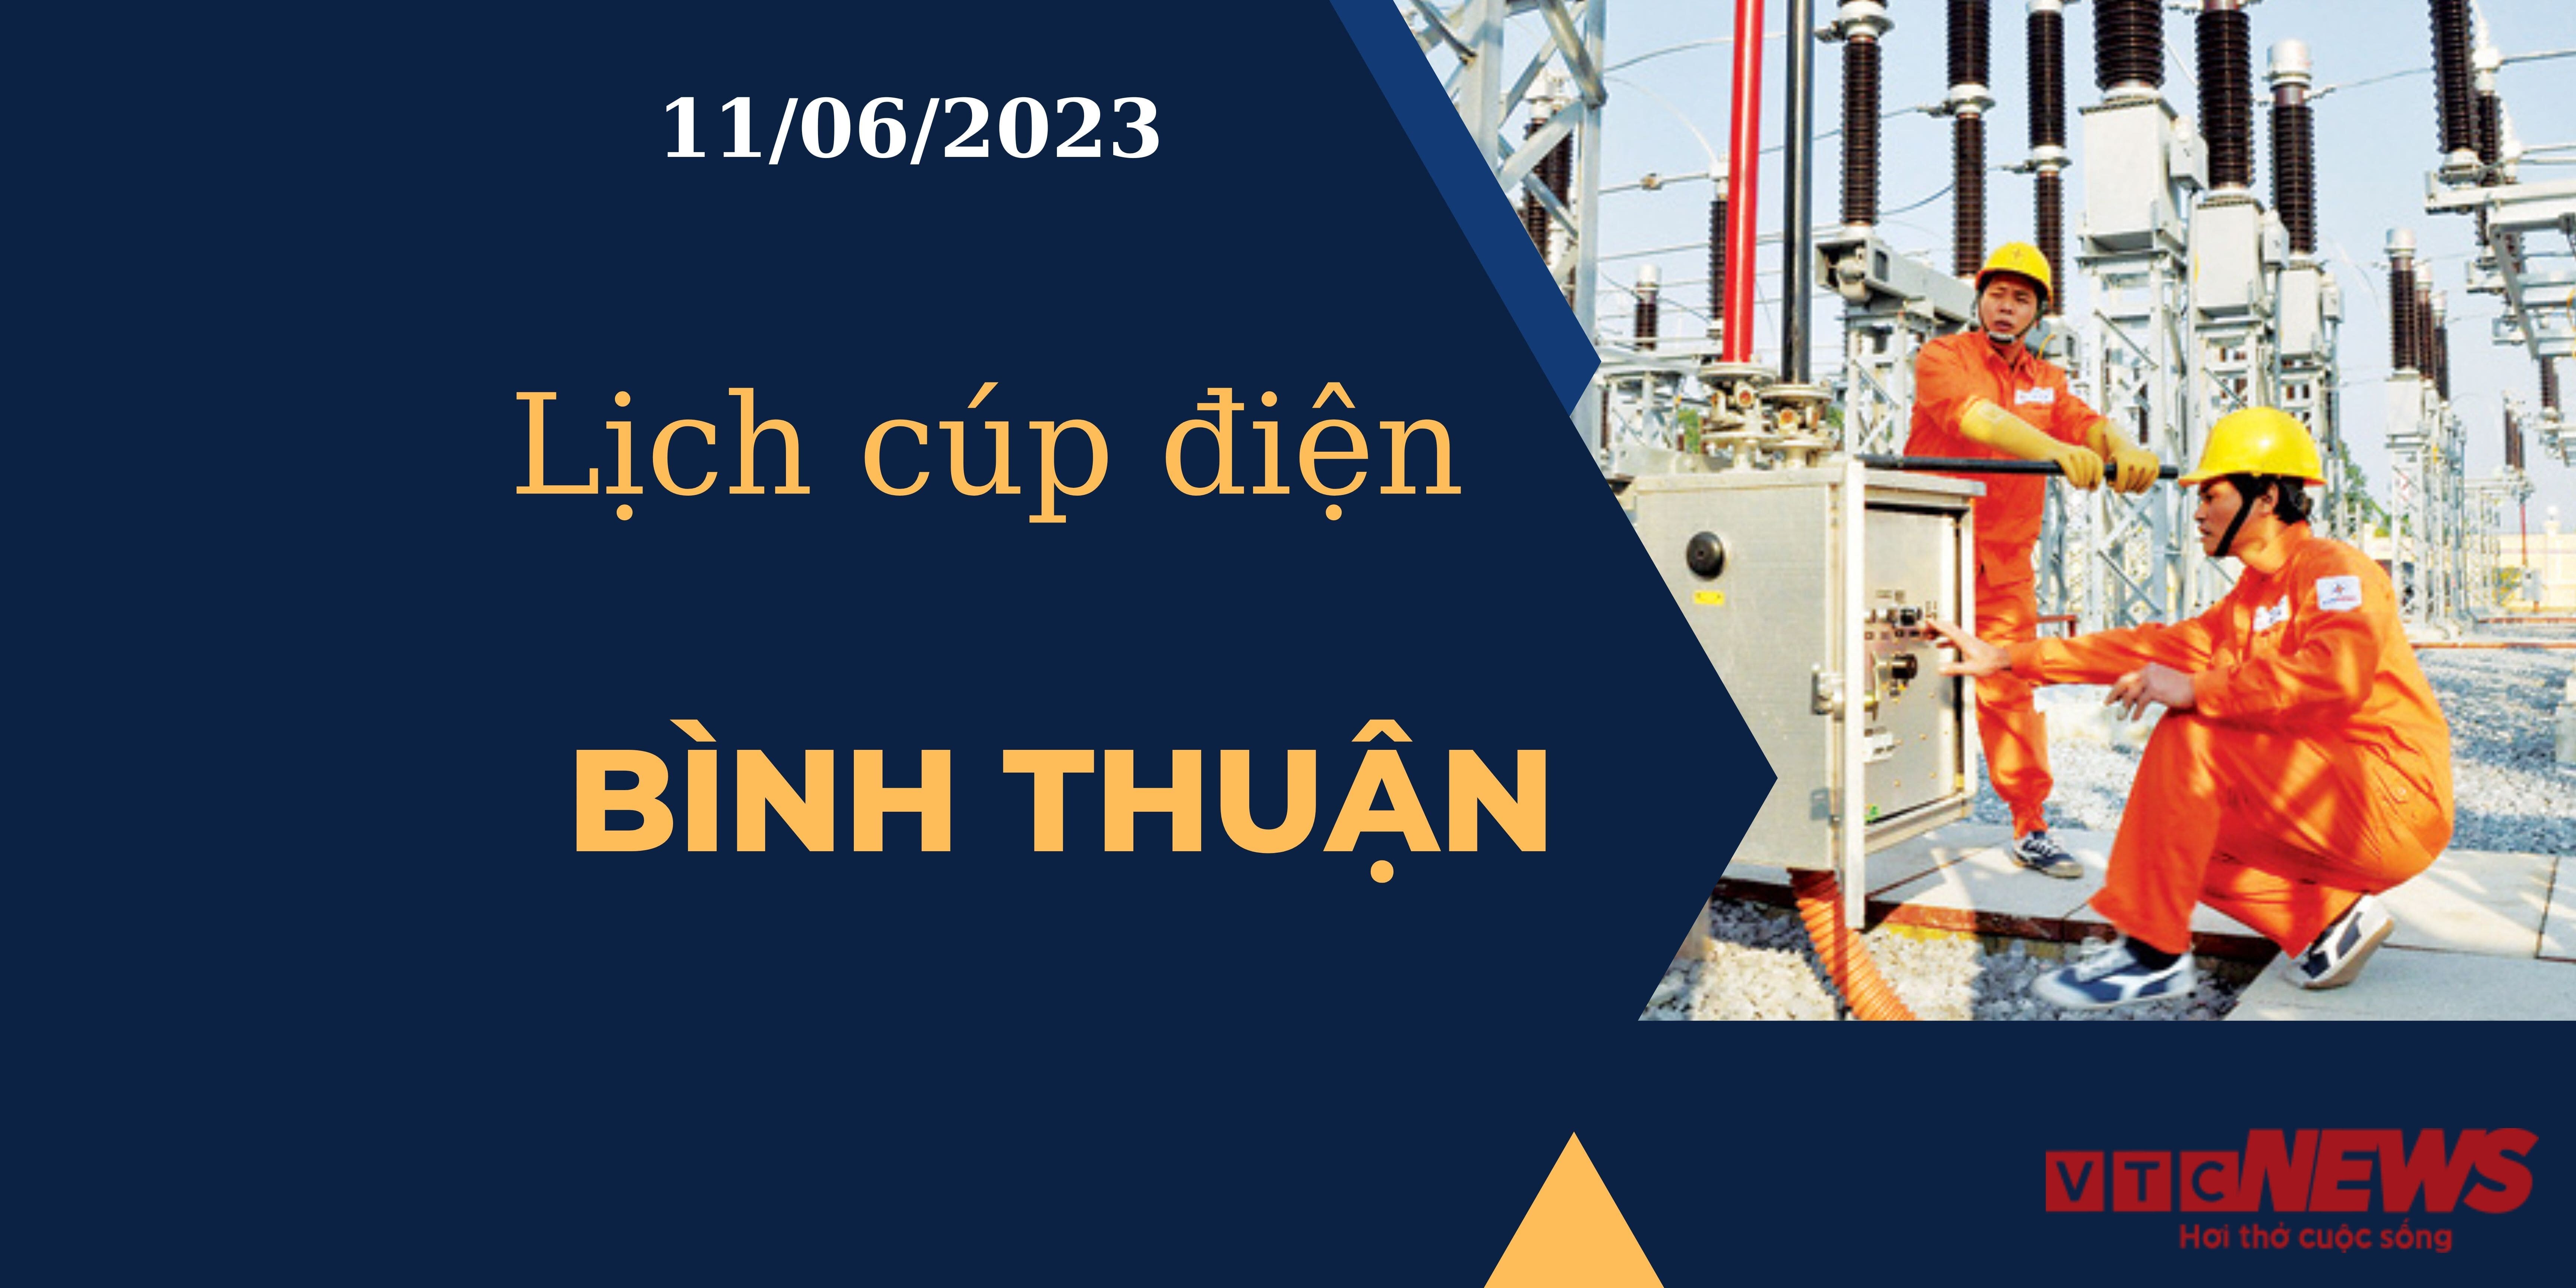 Lịch cúp điện hôm nay ngày 11/06/2023 tại Bình Thuận - 1